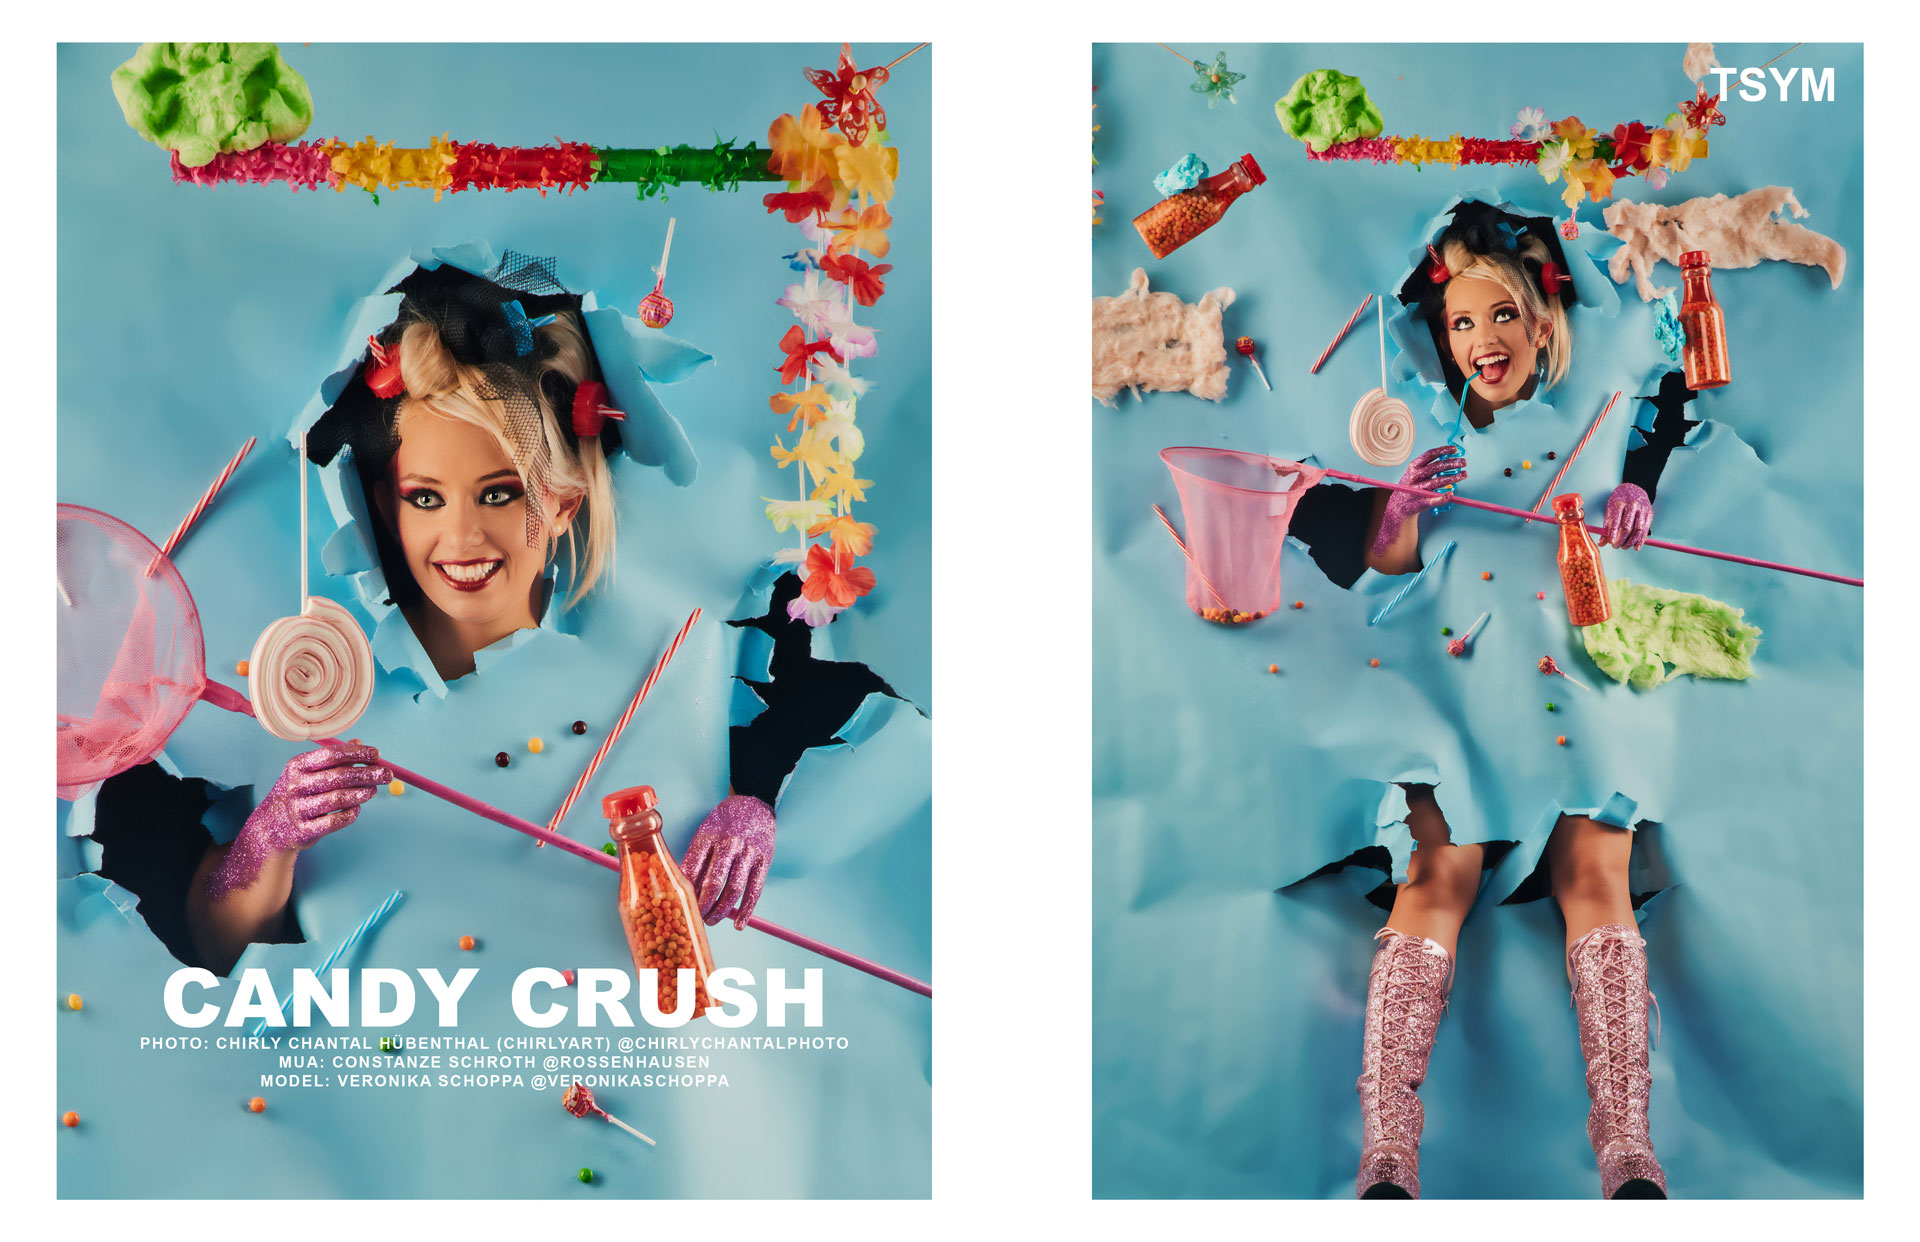 TSYM Magazine Candy Crush